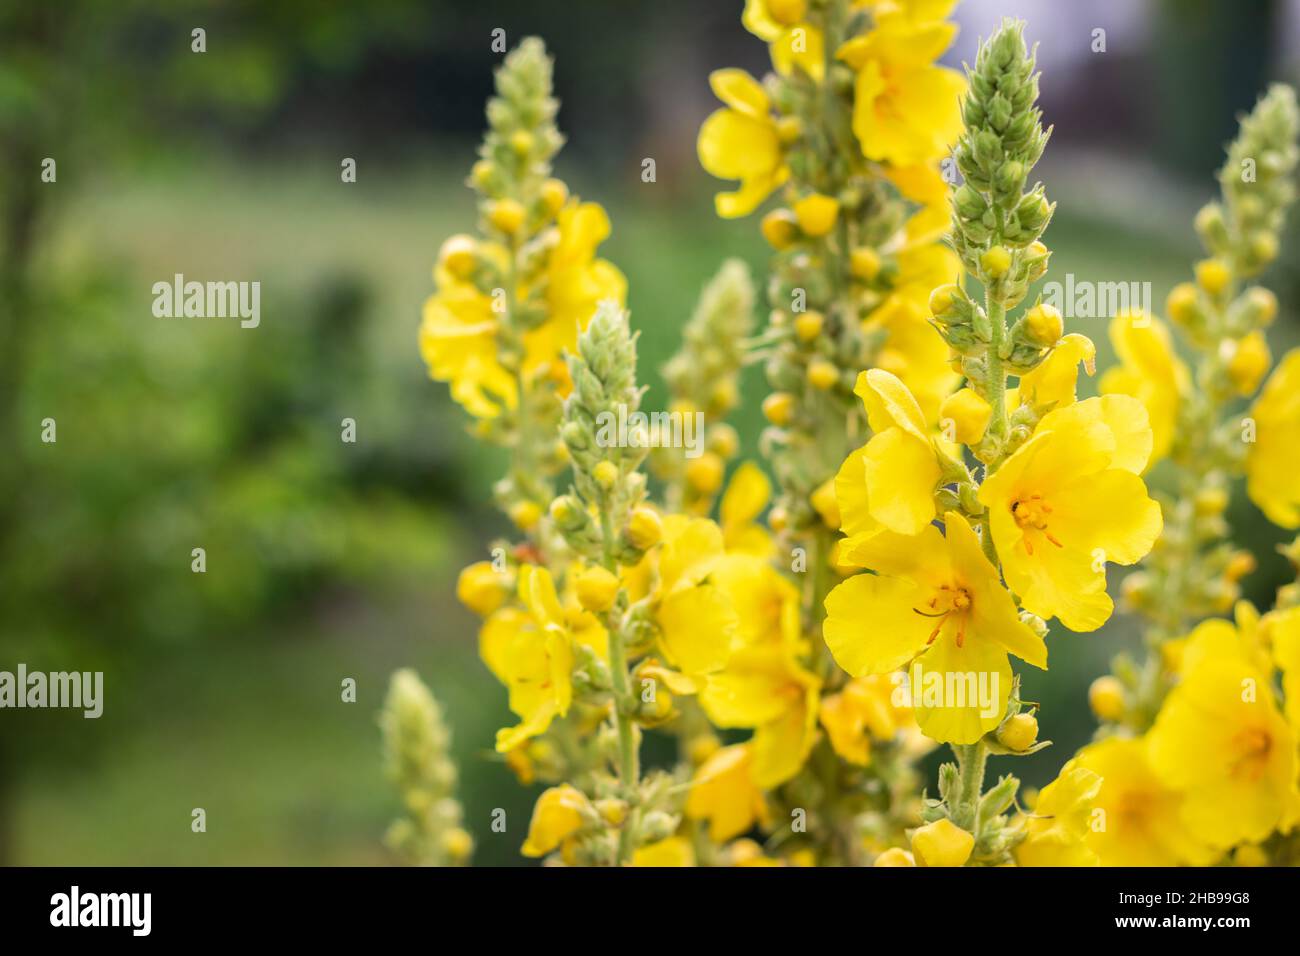 Verbascum Densiflorum in bloom, yellow mullein flower. Herbs for alternative medicine Stock Photo